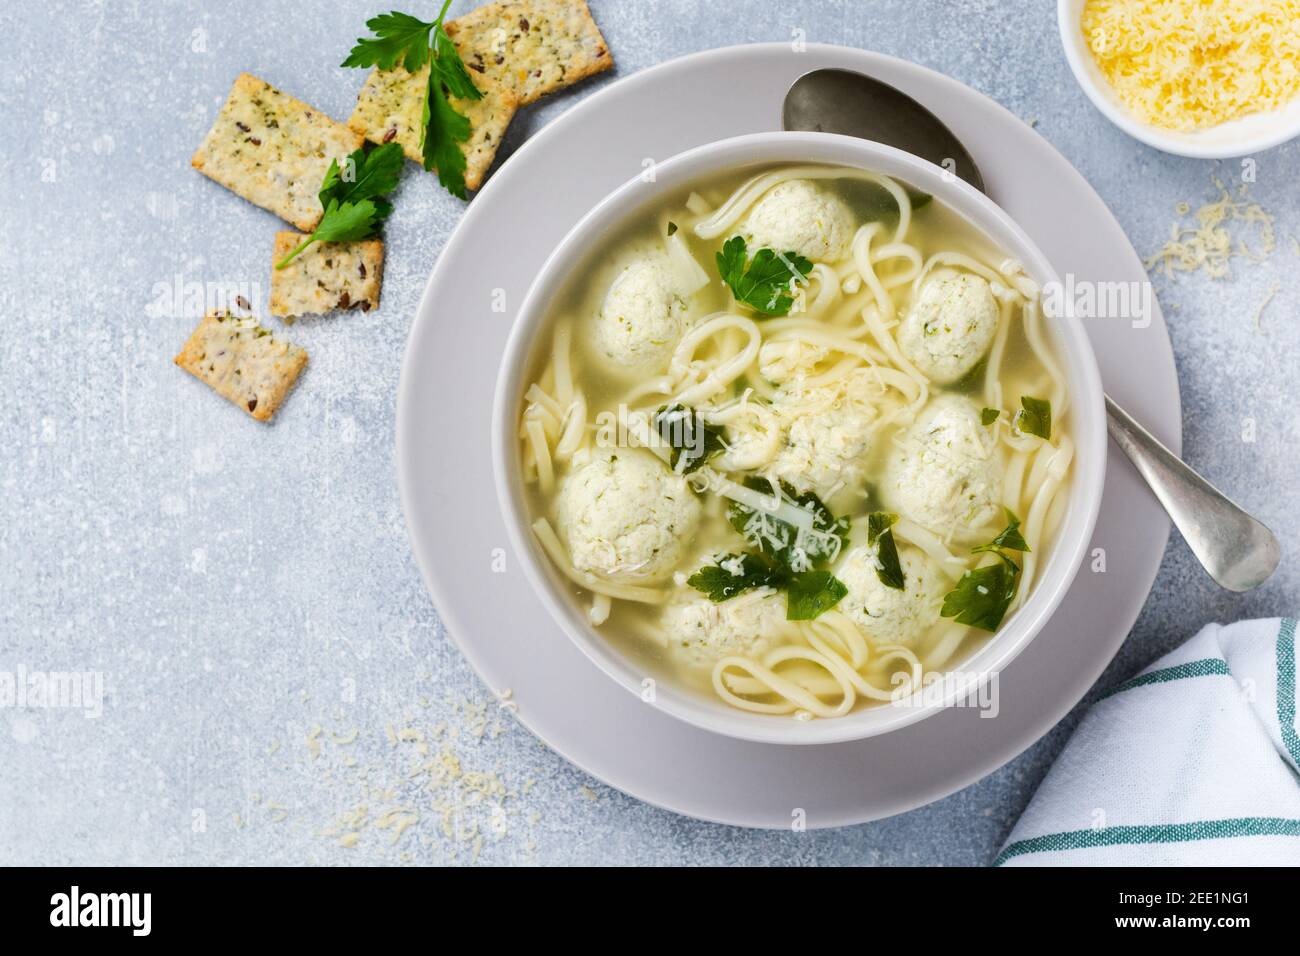 Zuppa con polpette di pollo e pasta all'uovo con parmigiano e prezzemolo. Cibo italiano per bambini con pasta e carne. Cucina italiana tradizionale. Foto Stock